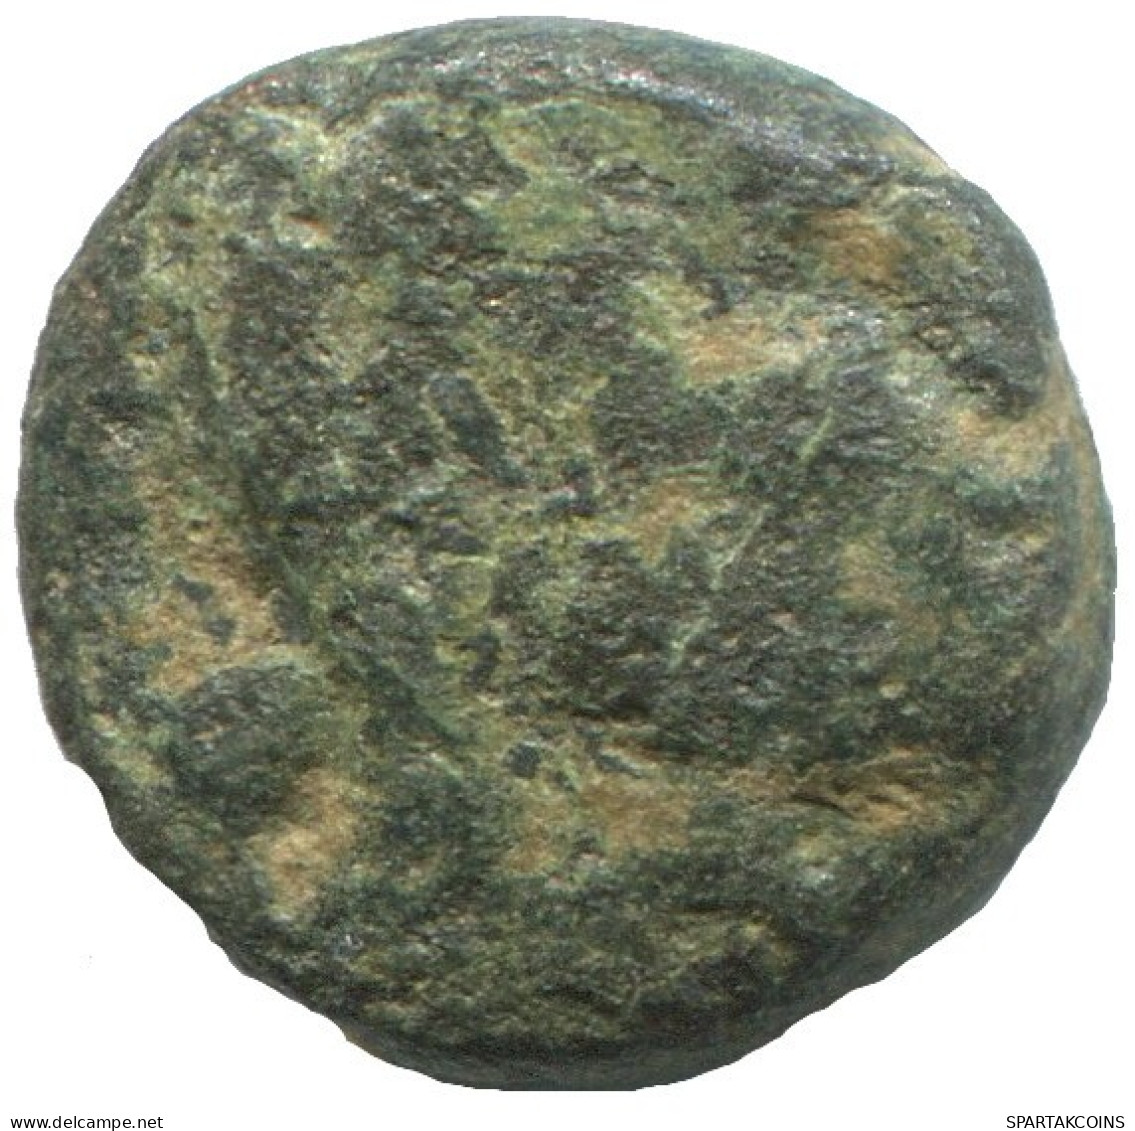 Antike Authentische Original GRIECHISCHE Münze 2.3g/12mm #NNN1492.9.D.A - Greche